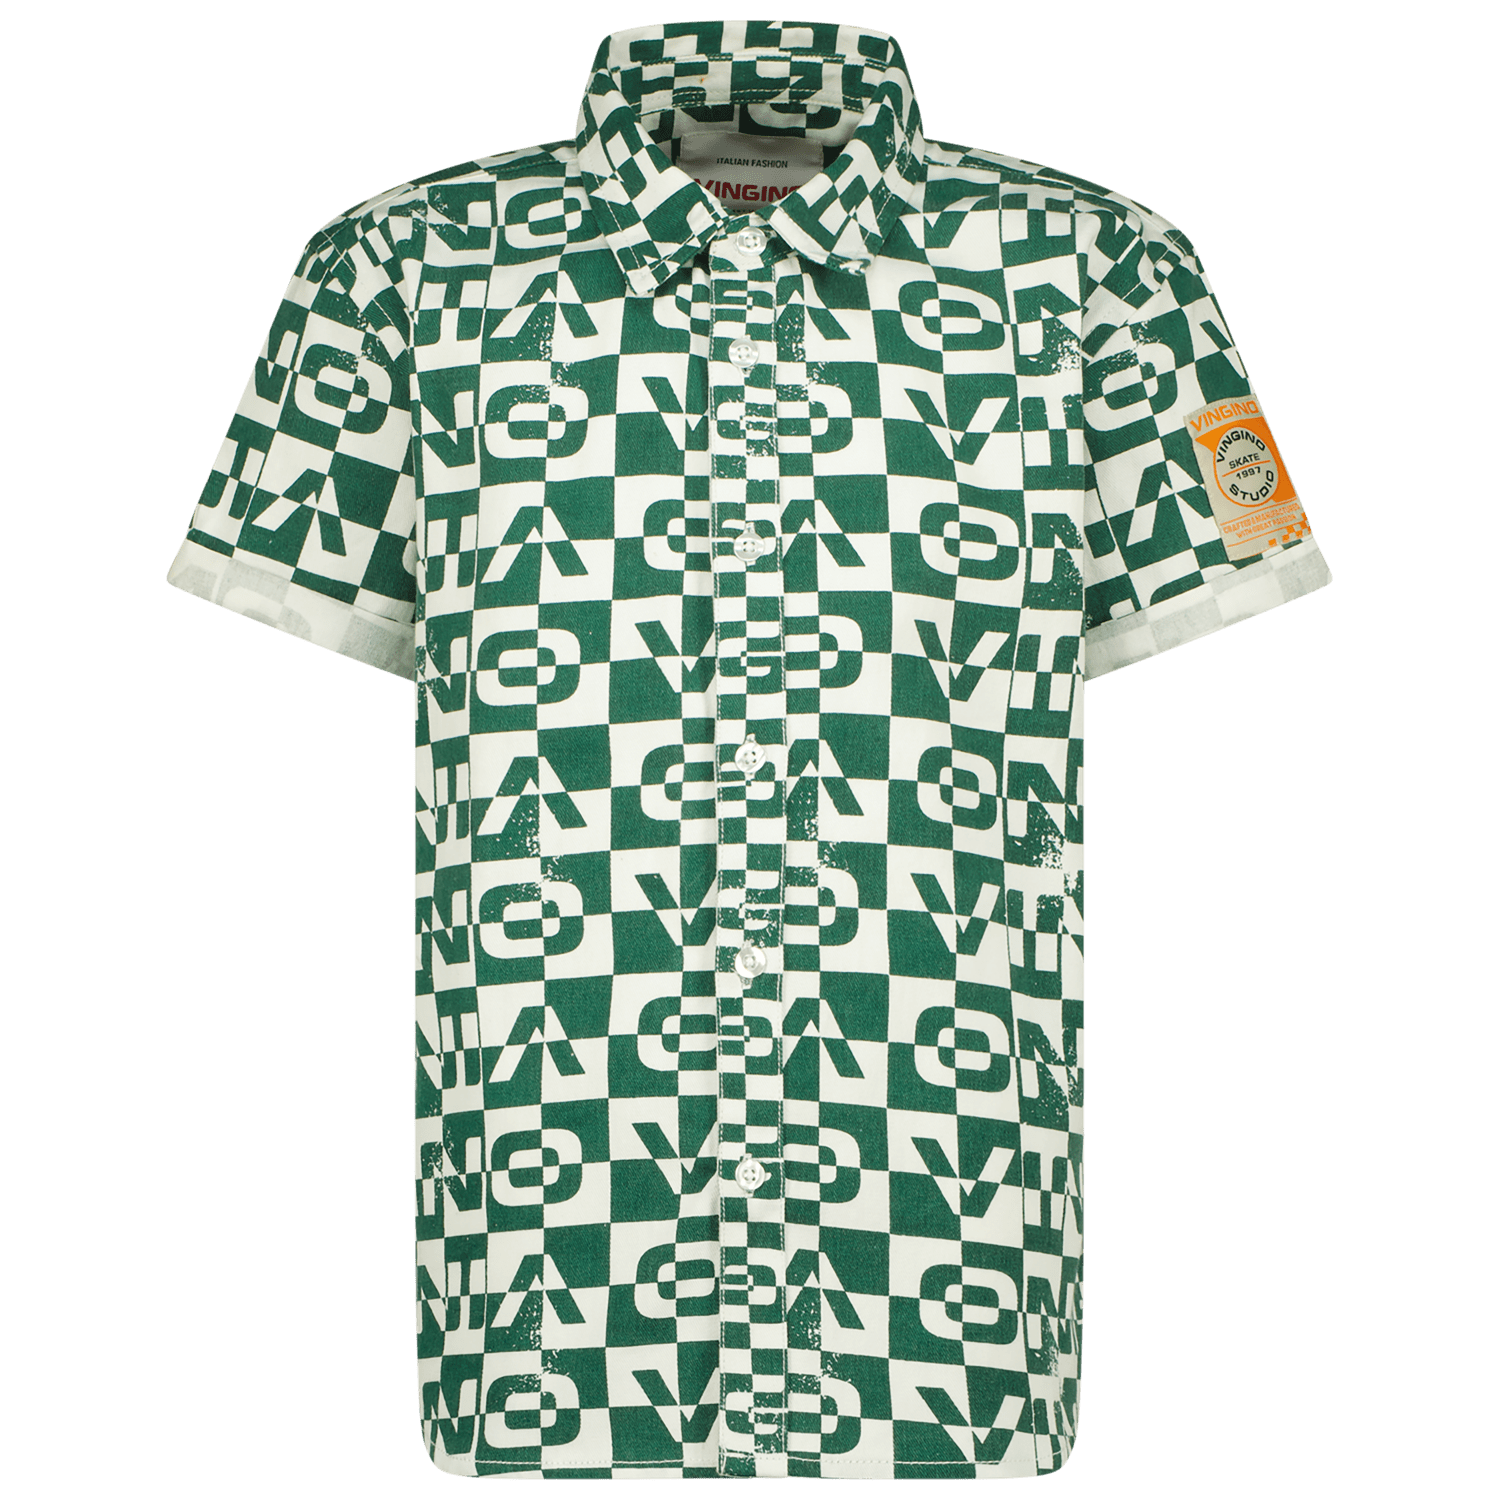 VINGINO overhemd Lampo met all over print groen wit Jongens Katoen Klassieke kraag 140